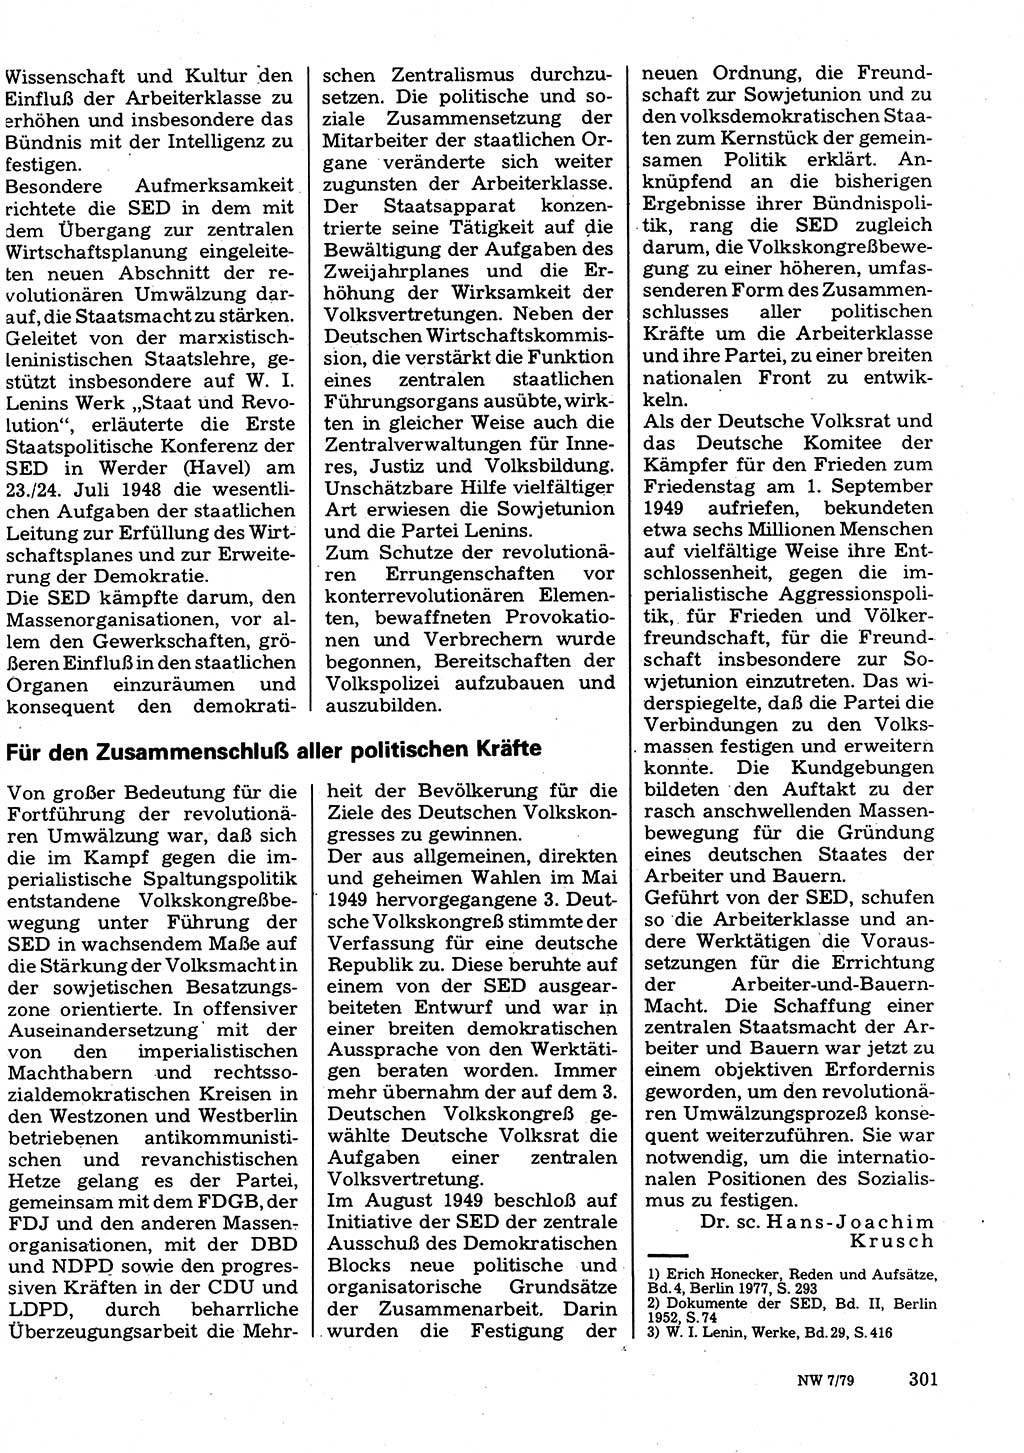 Neuer Weg (NW), Organ des Zentralkomitees (ZK) der SED (Sozialistische Einheitspartei Deutschlands) für Fragen des Parteilebens, 34. Jahrgang [Deutsche Demokratische Republik (DDR)] 1979, Seite 301 (NW ZK SED DDR 1979, S. 301)